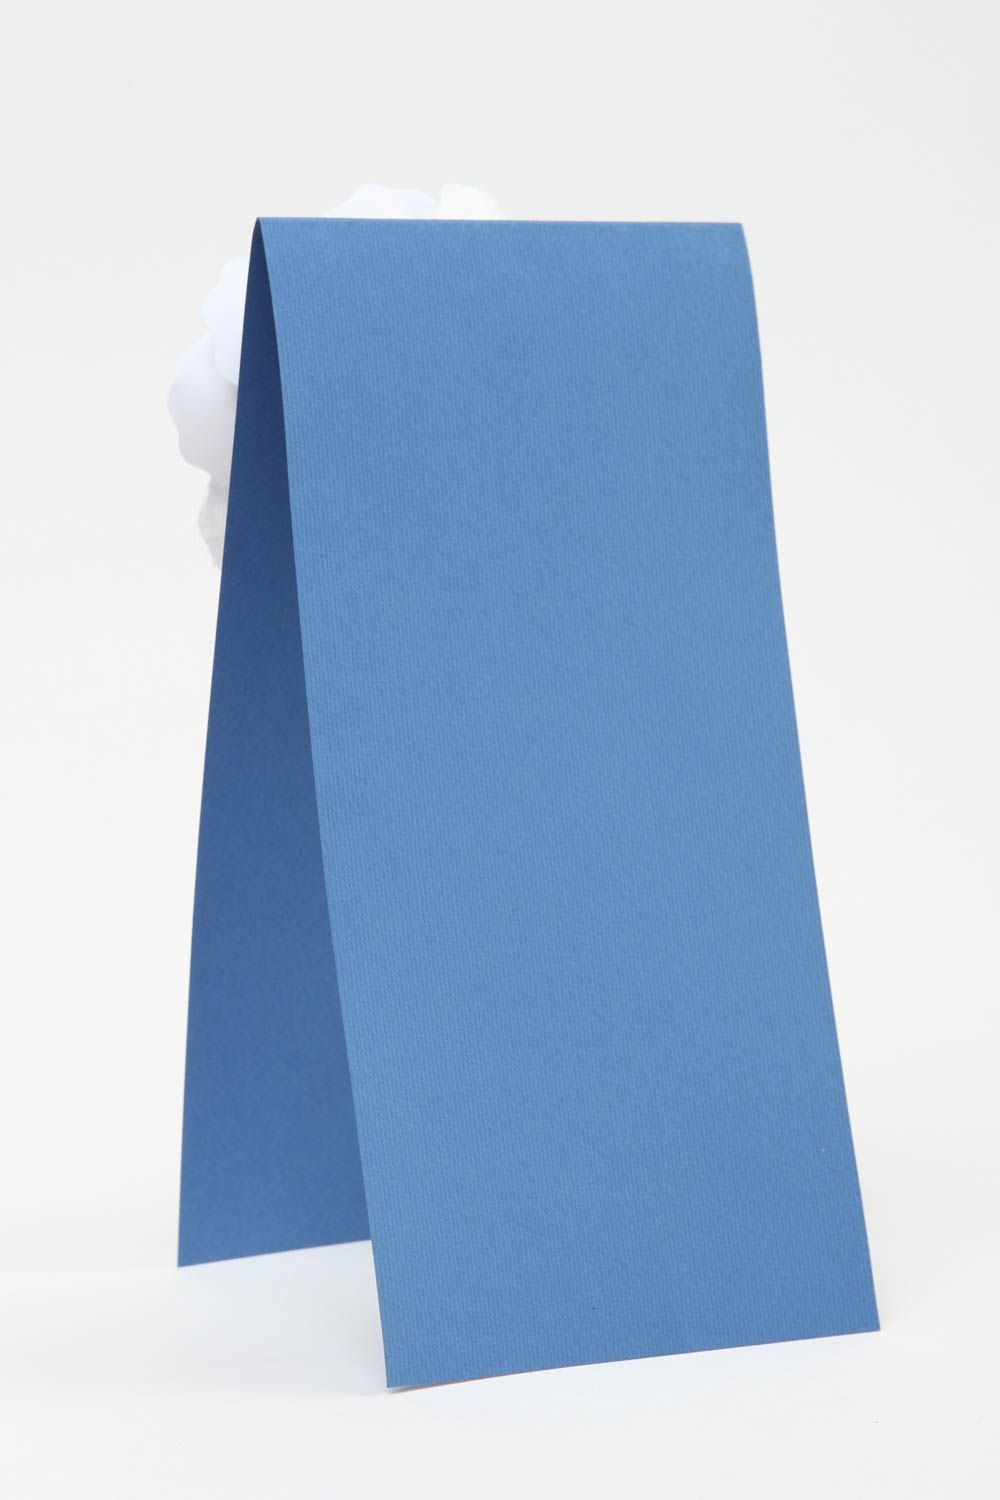 Открытка ручной работы поздравительная открытка синяя с белым красивая открытка фото 3